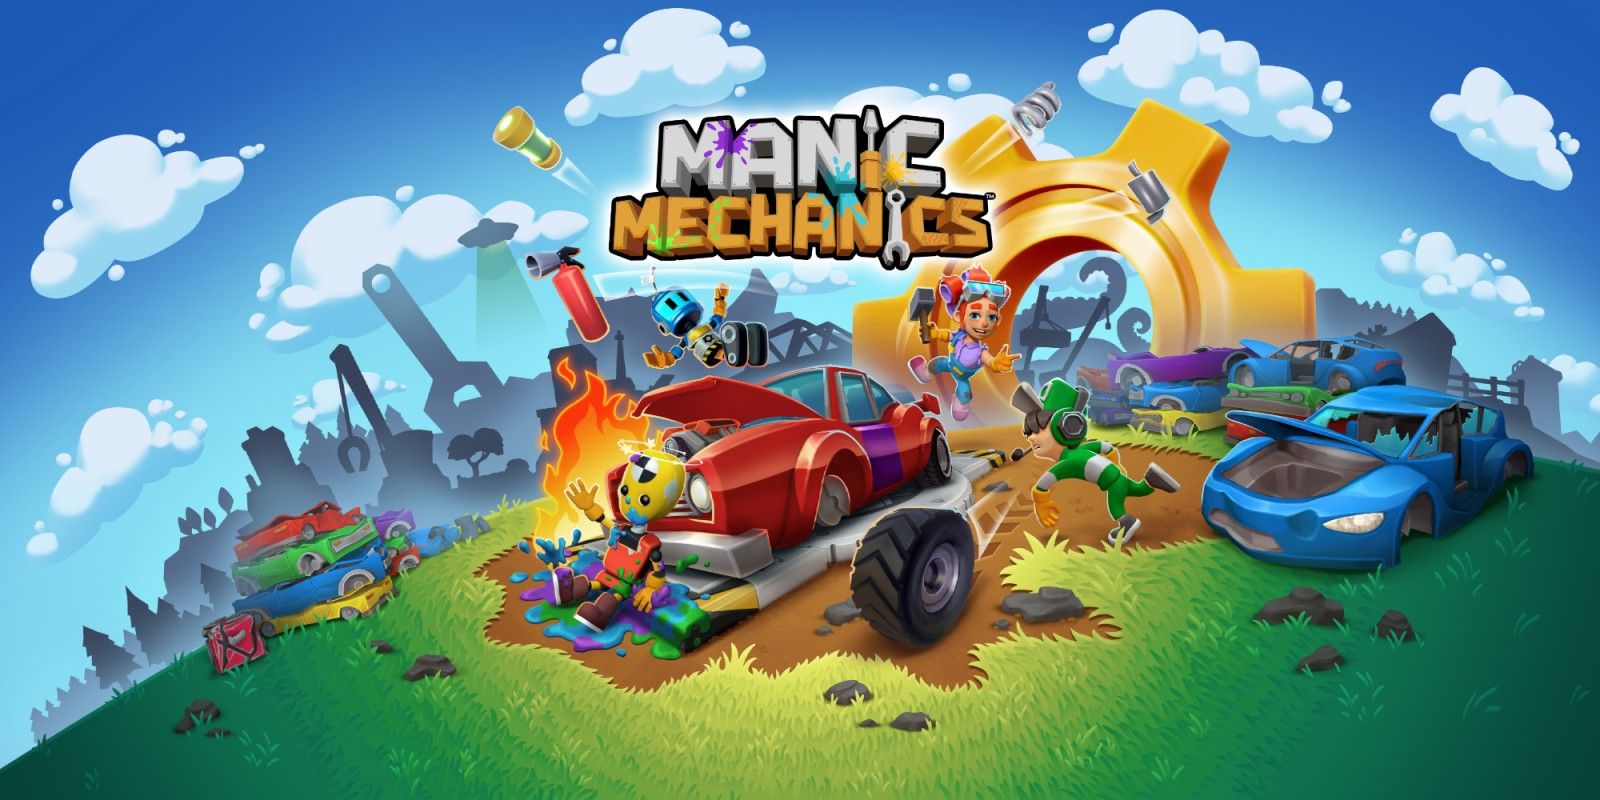 Manic Mechanics, annunciata l'uscita delle versioni PC, PS4 e One